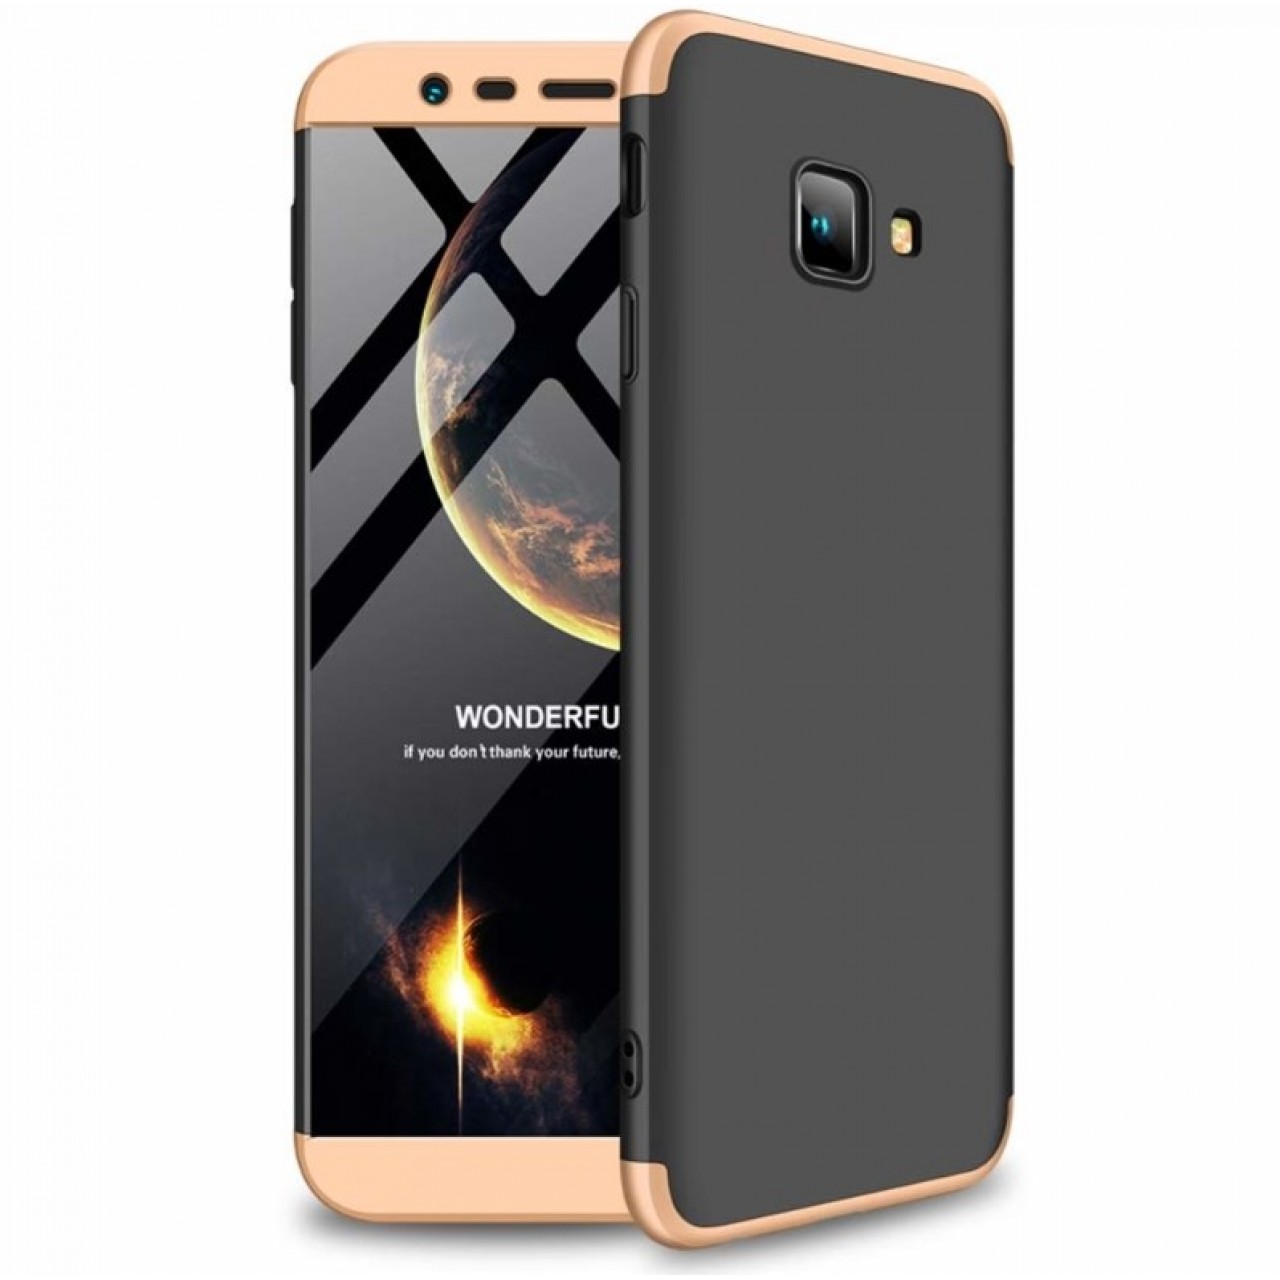 Θήκη Samsung Galaxy J4 PLUS 2018 ( J415 ) Full Body GKK 360° Σκληρή Πλαστική - 4667 - Χρυσό Μαύρο - ΟΕΜ